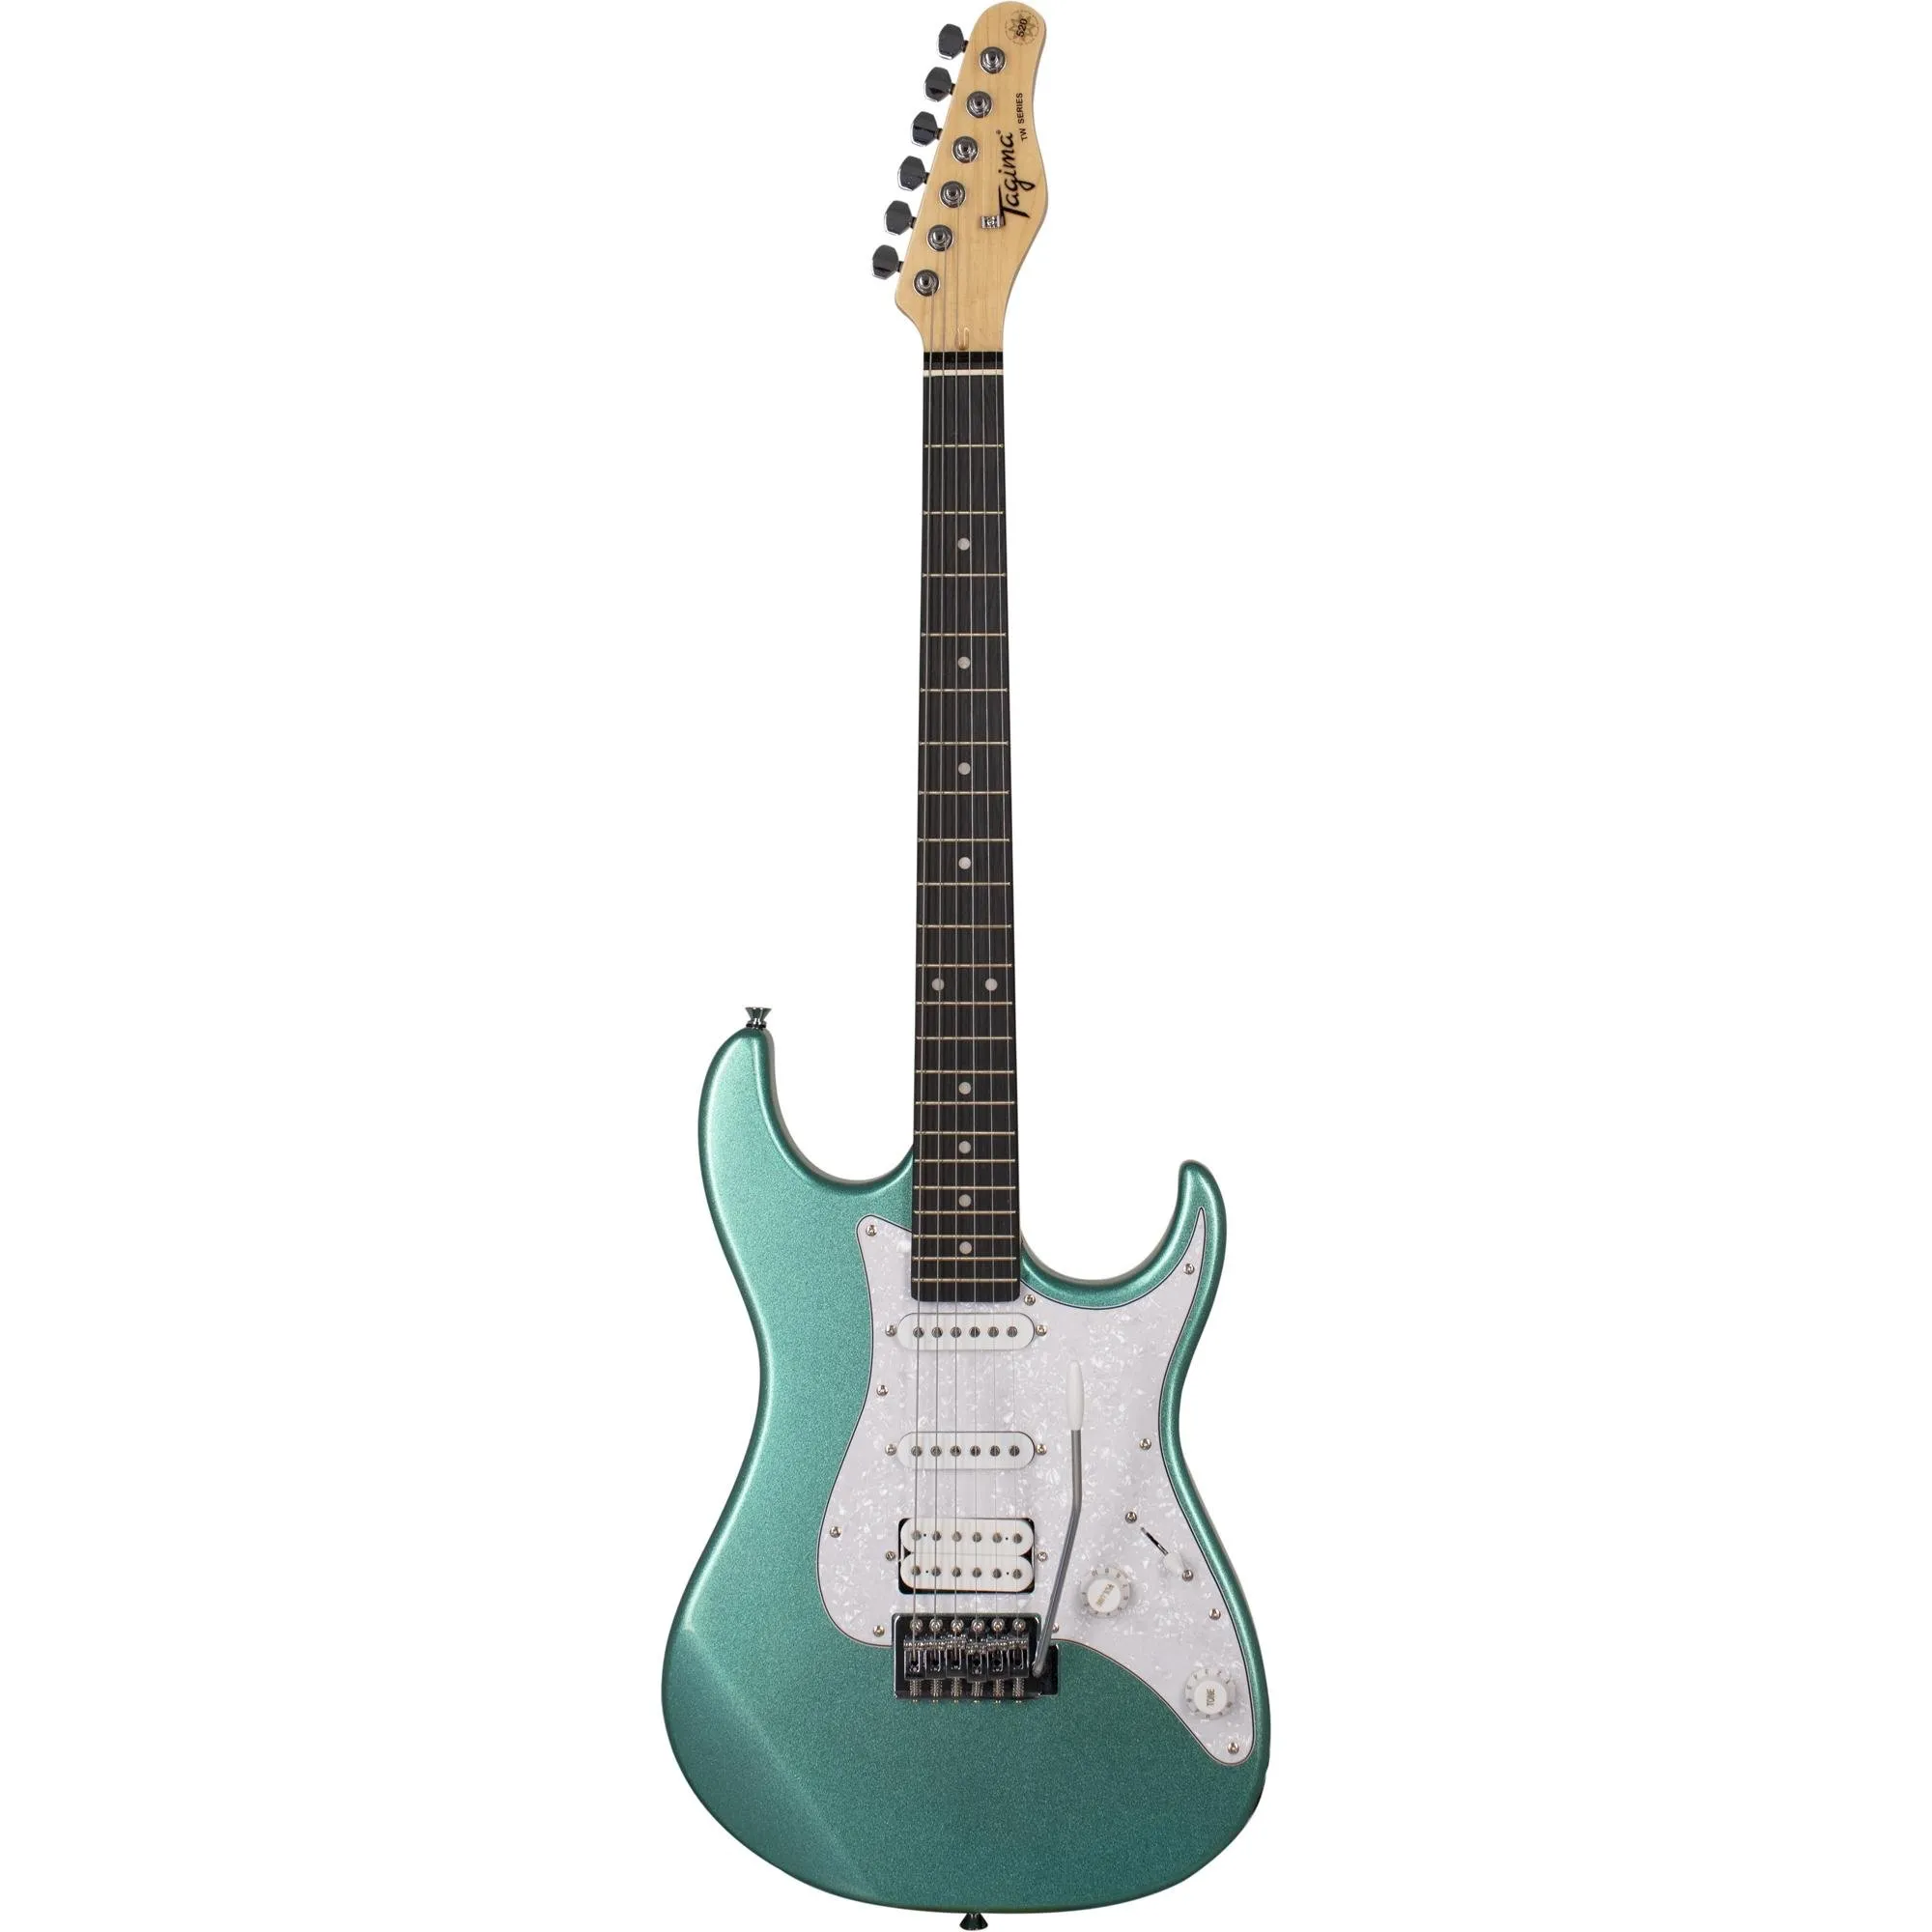 Guitarra Tagima TG-520 Metallic Surf Green por 1.141,99 à vista no boleto/pix ou parcele em até 12x sem juros. Compre na loja Mundomax!